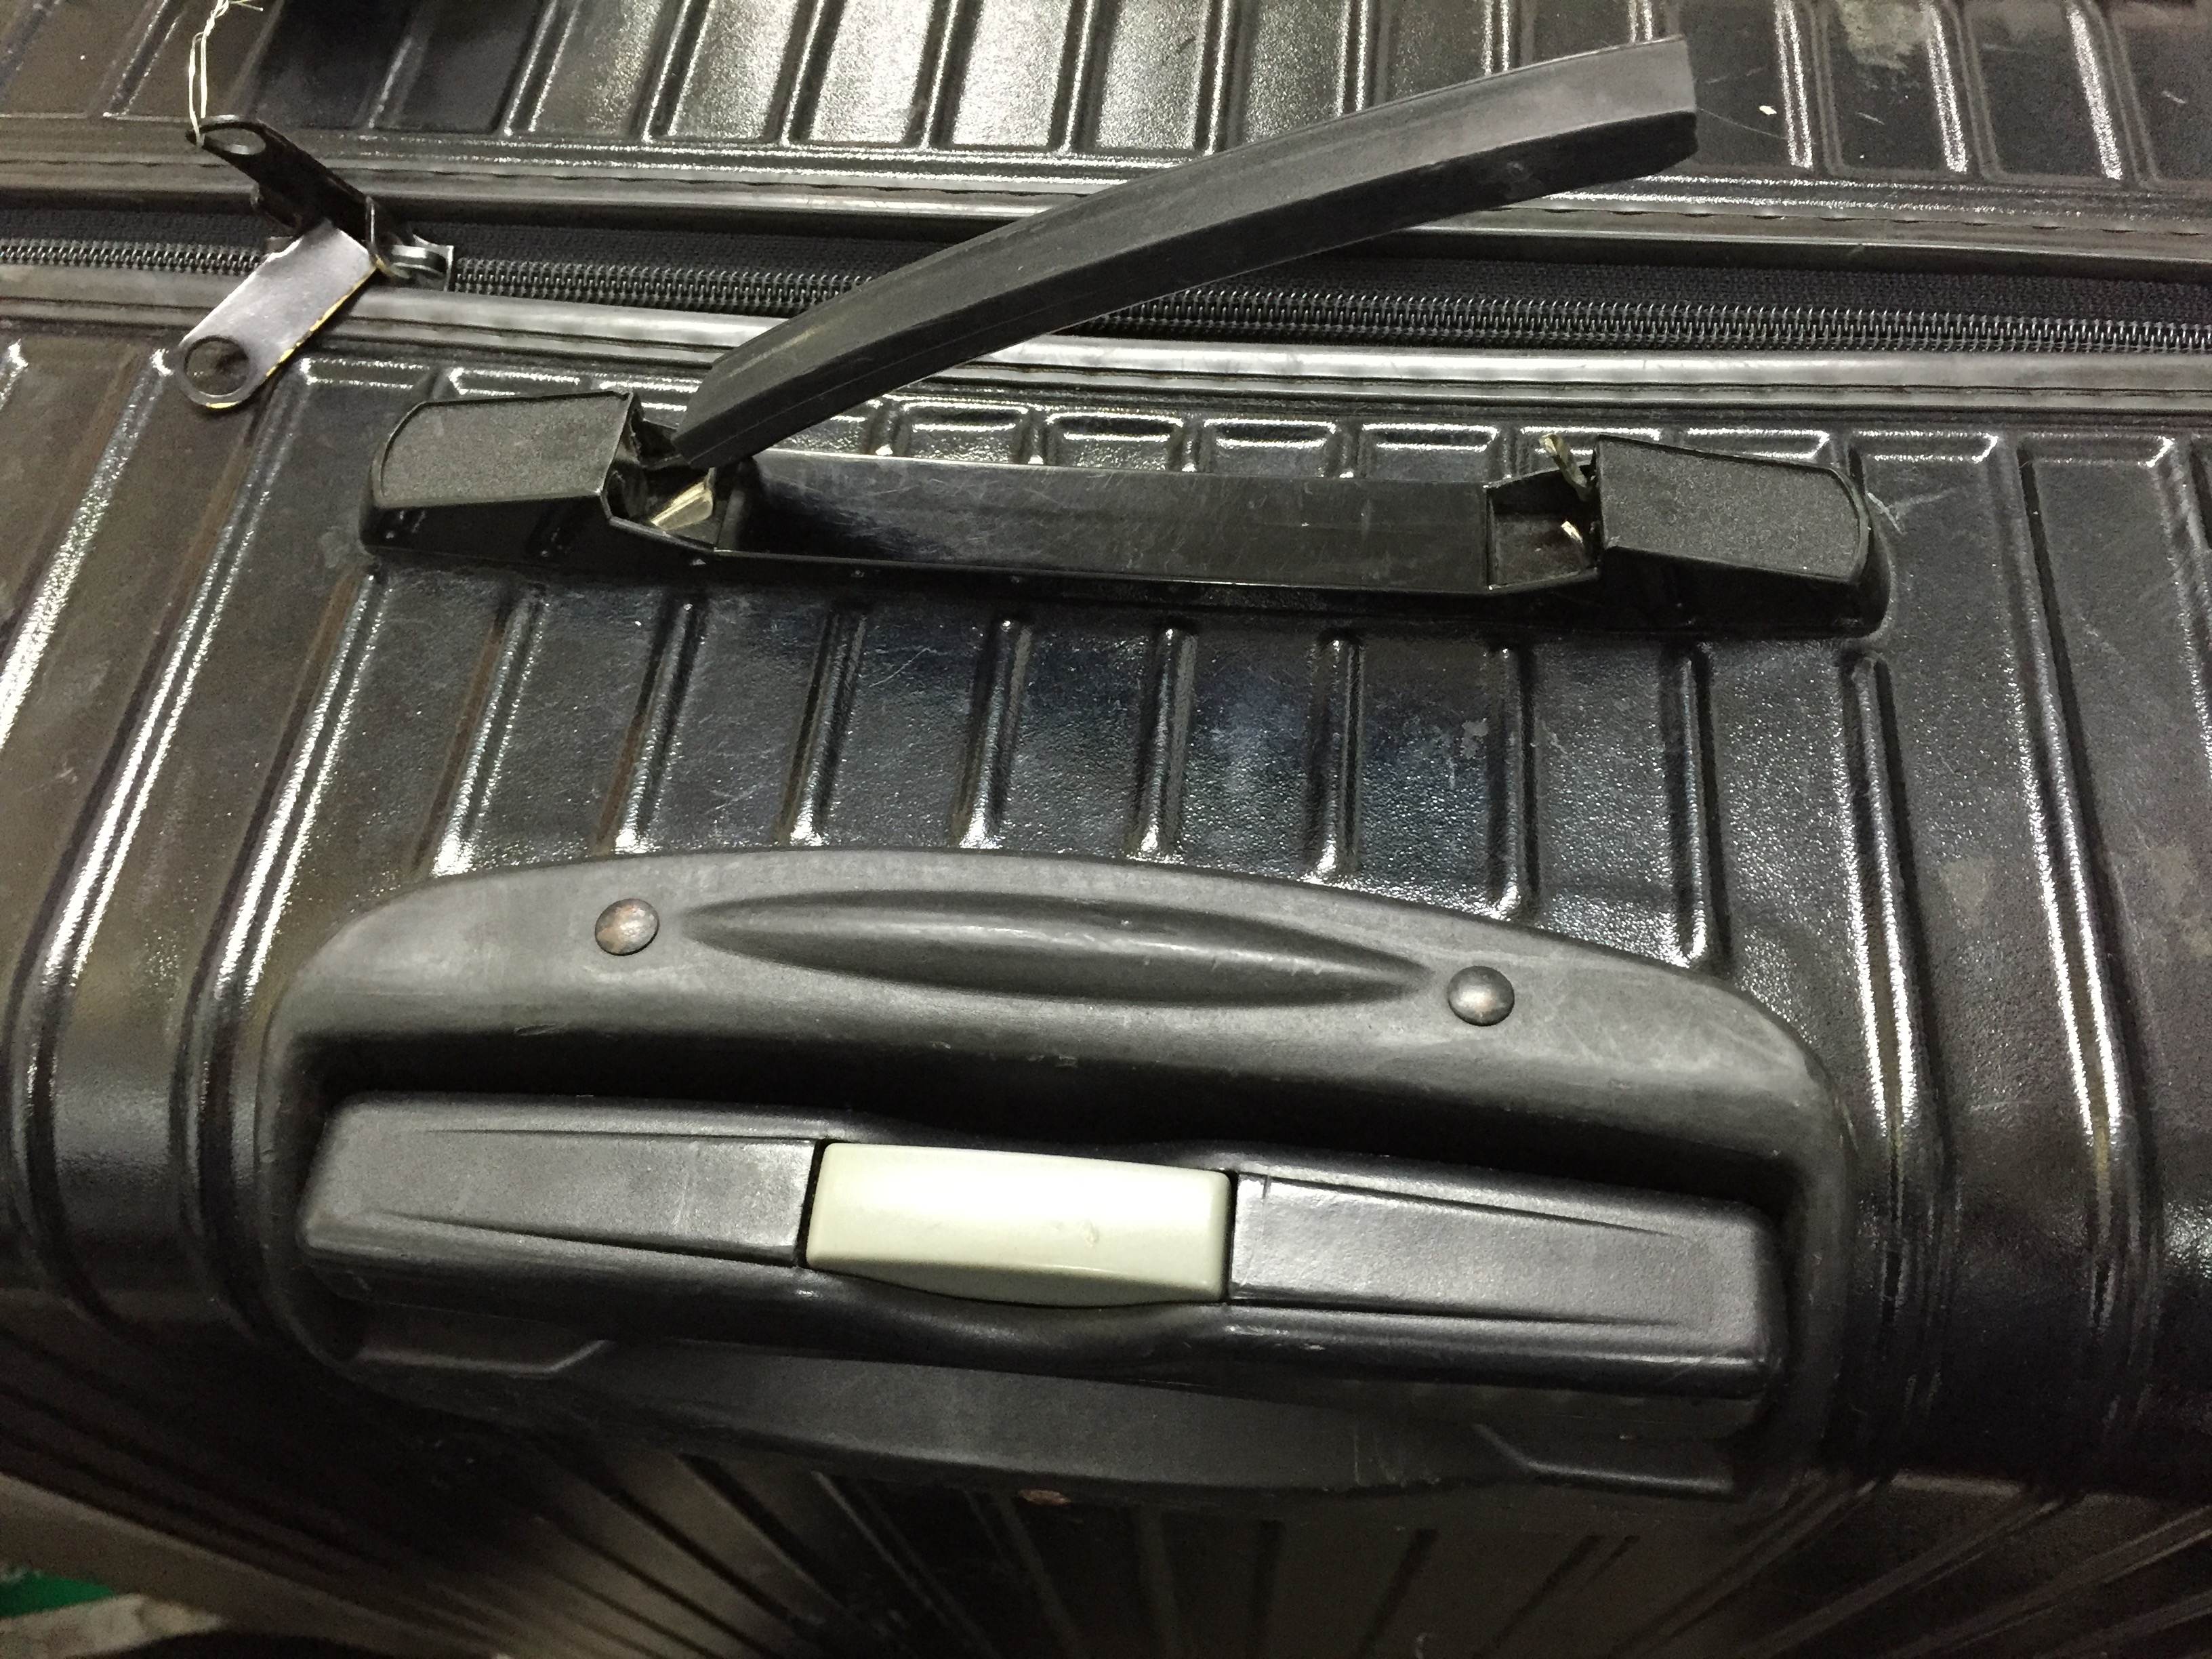 スーツケースが故障してしまった 場合のカバン修理専門店紹介 諦める前に一度無料見積を 株式会社アトランダムのプレスリリース